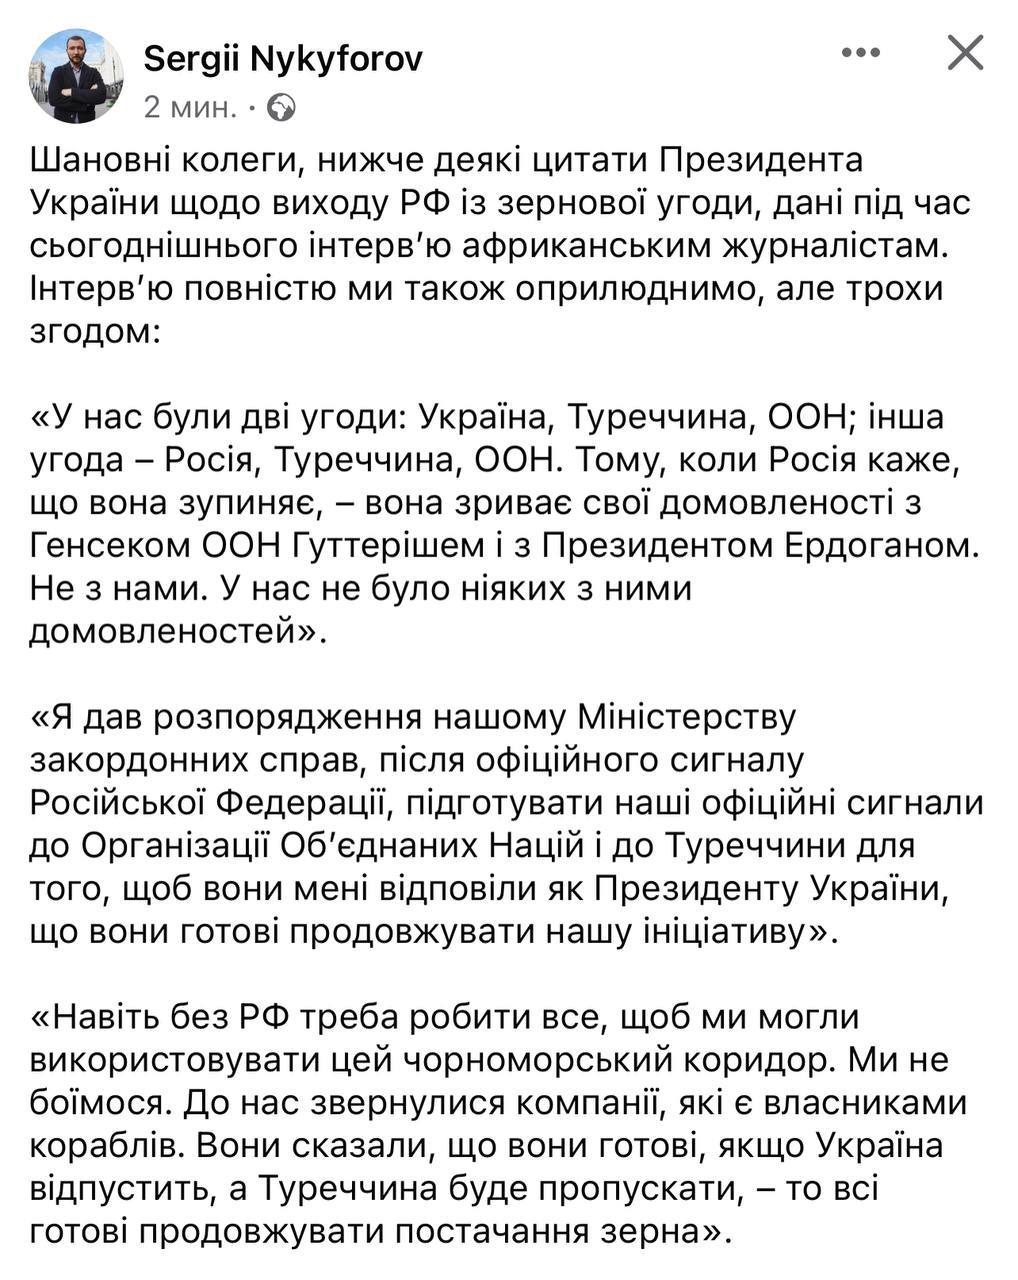 Зеленский о решении РФ по зерновой сделке: "У нас не было никаких договоренностей"